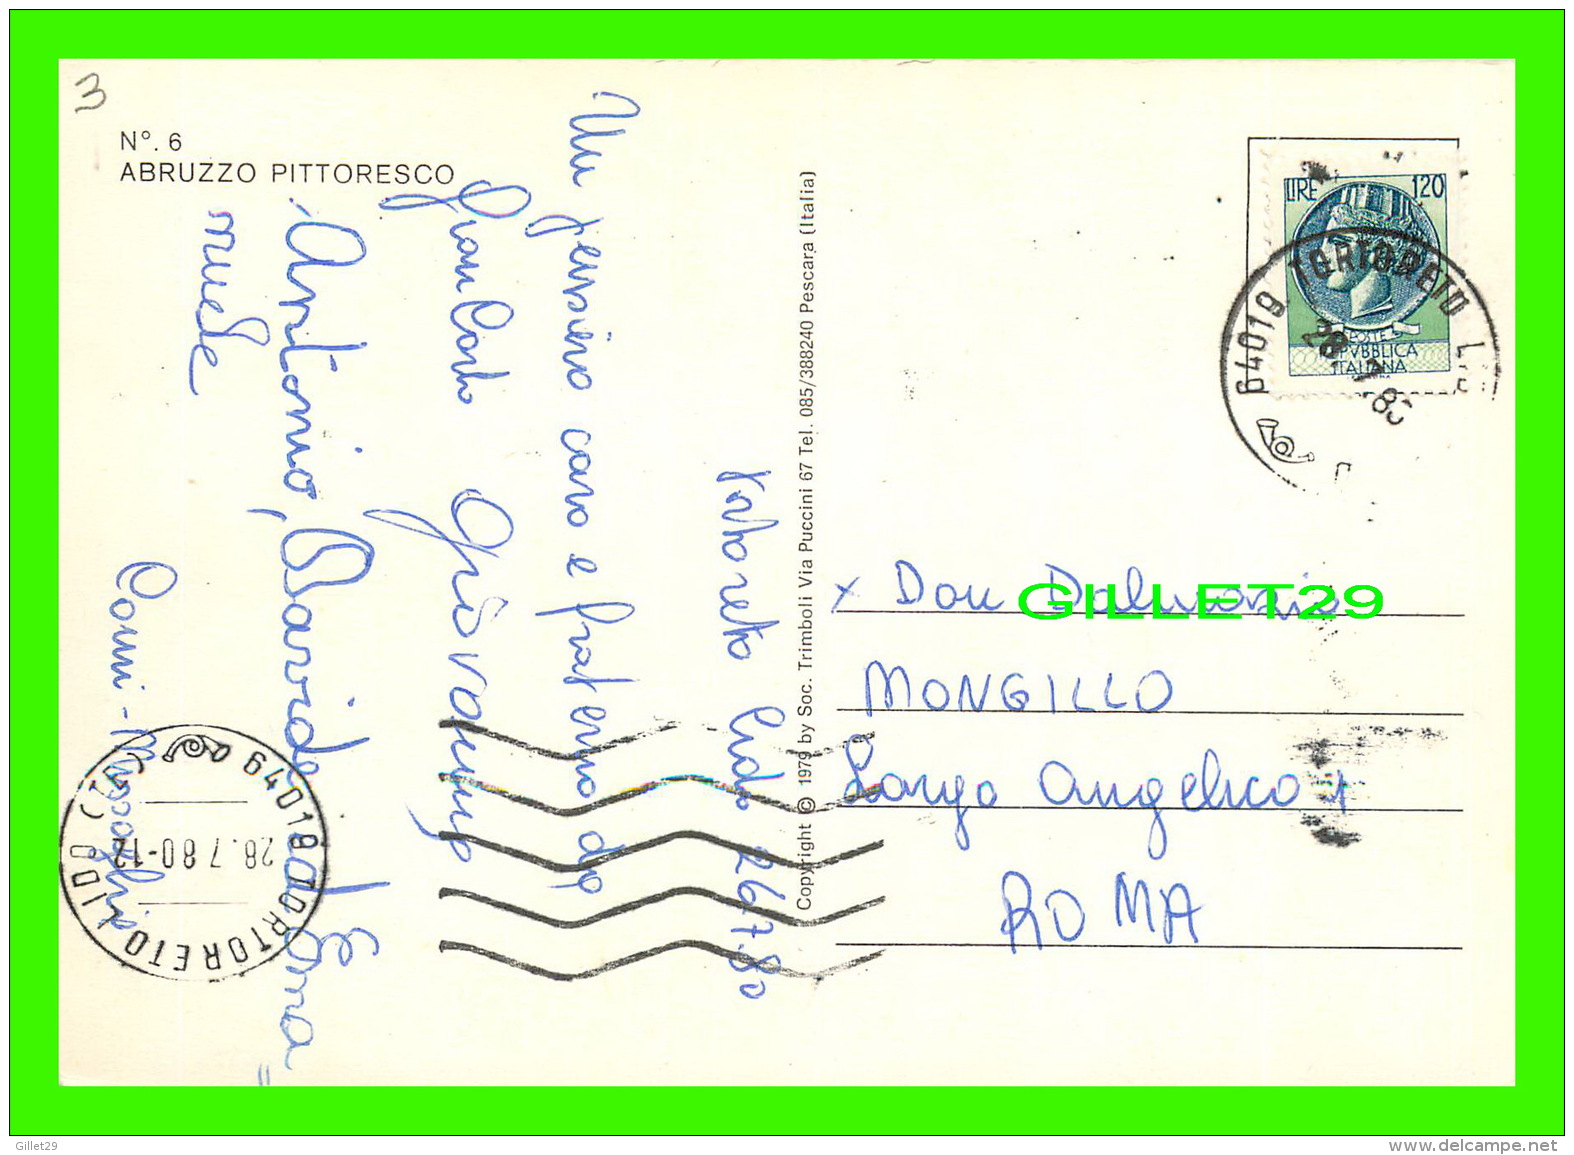 TORTORETA, ITALIA - ABRUZZO PITTORESCO - 9 MULTIVUES - TRAVEL IN 1983 -0 - Teramo